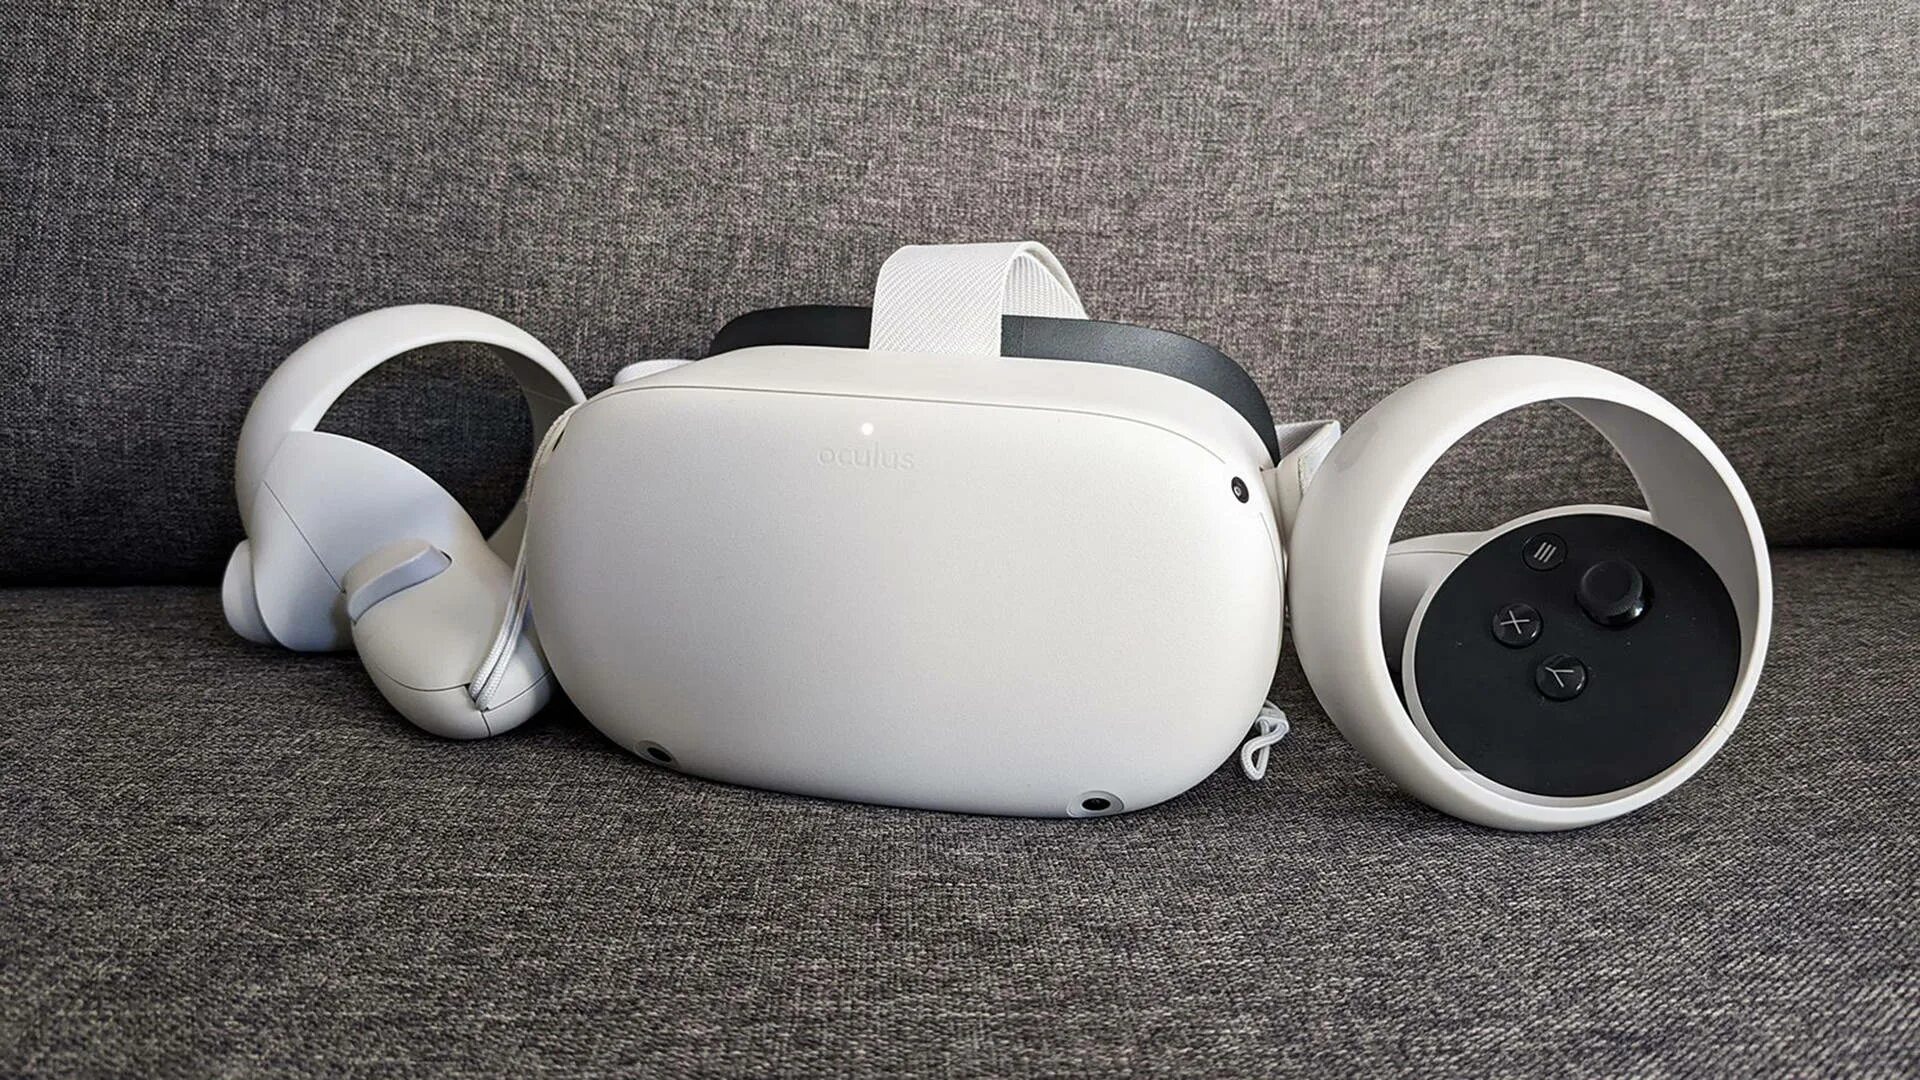 Шлем виртуальной реальности Oculus Quest 2 - 128 GB, белый. Окулус квест 2. ВР Окулус квест 2. VR шлем Oculus Quest 2. Oculus quest 2 сравнение